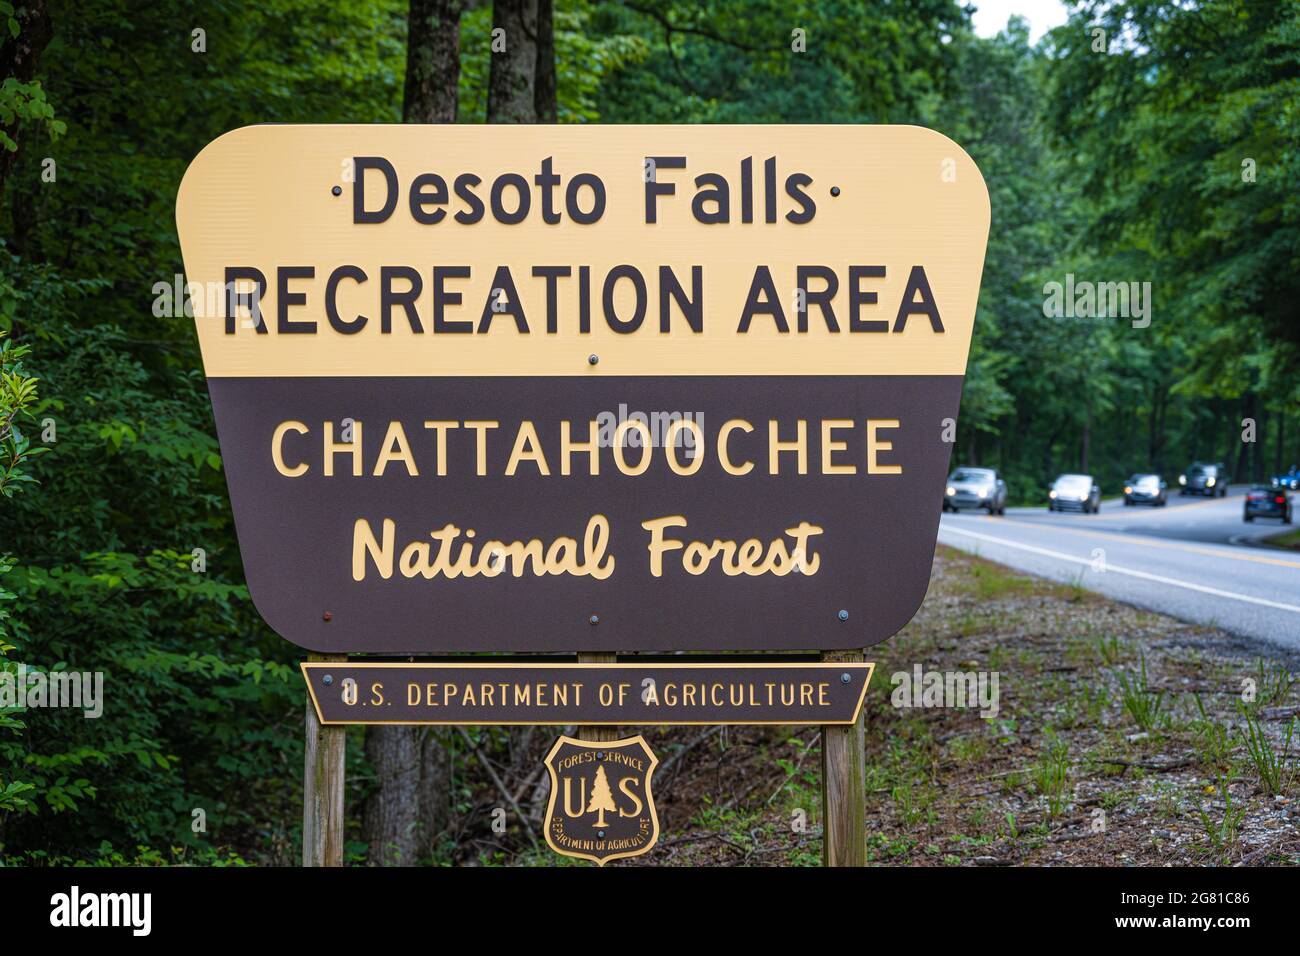 Ingresso all'area ricreativa di Desoto Falls lungo l'autostrada US 129 nella Chattahoochee National Forest della Georgia settentrionale. (STATI UNITI) Foto Stock